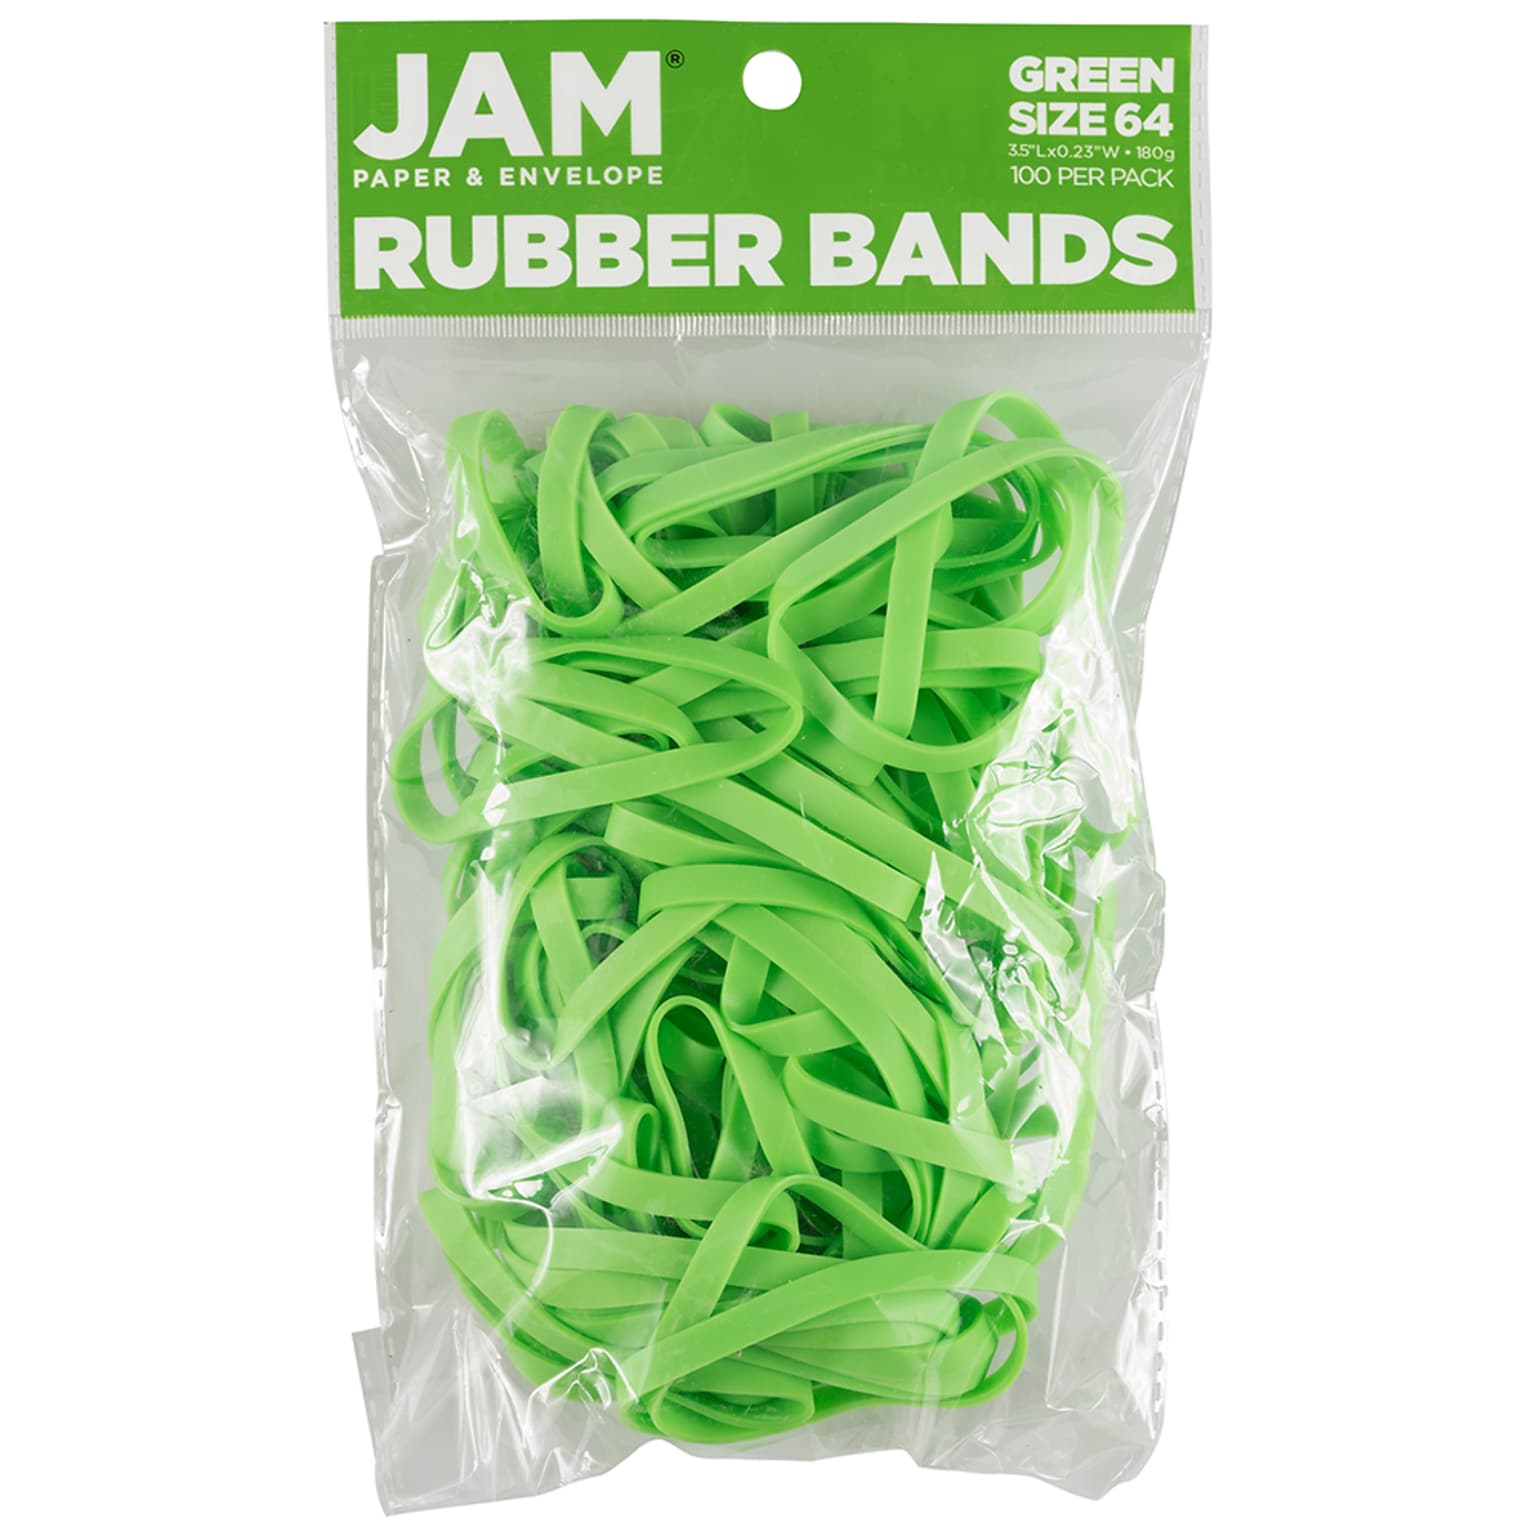 JAM Paper Rubber Bands, Size 64, Green, 100/Pack (33364RBgr)